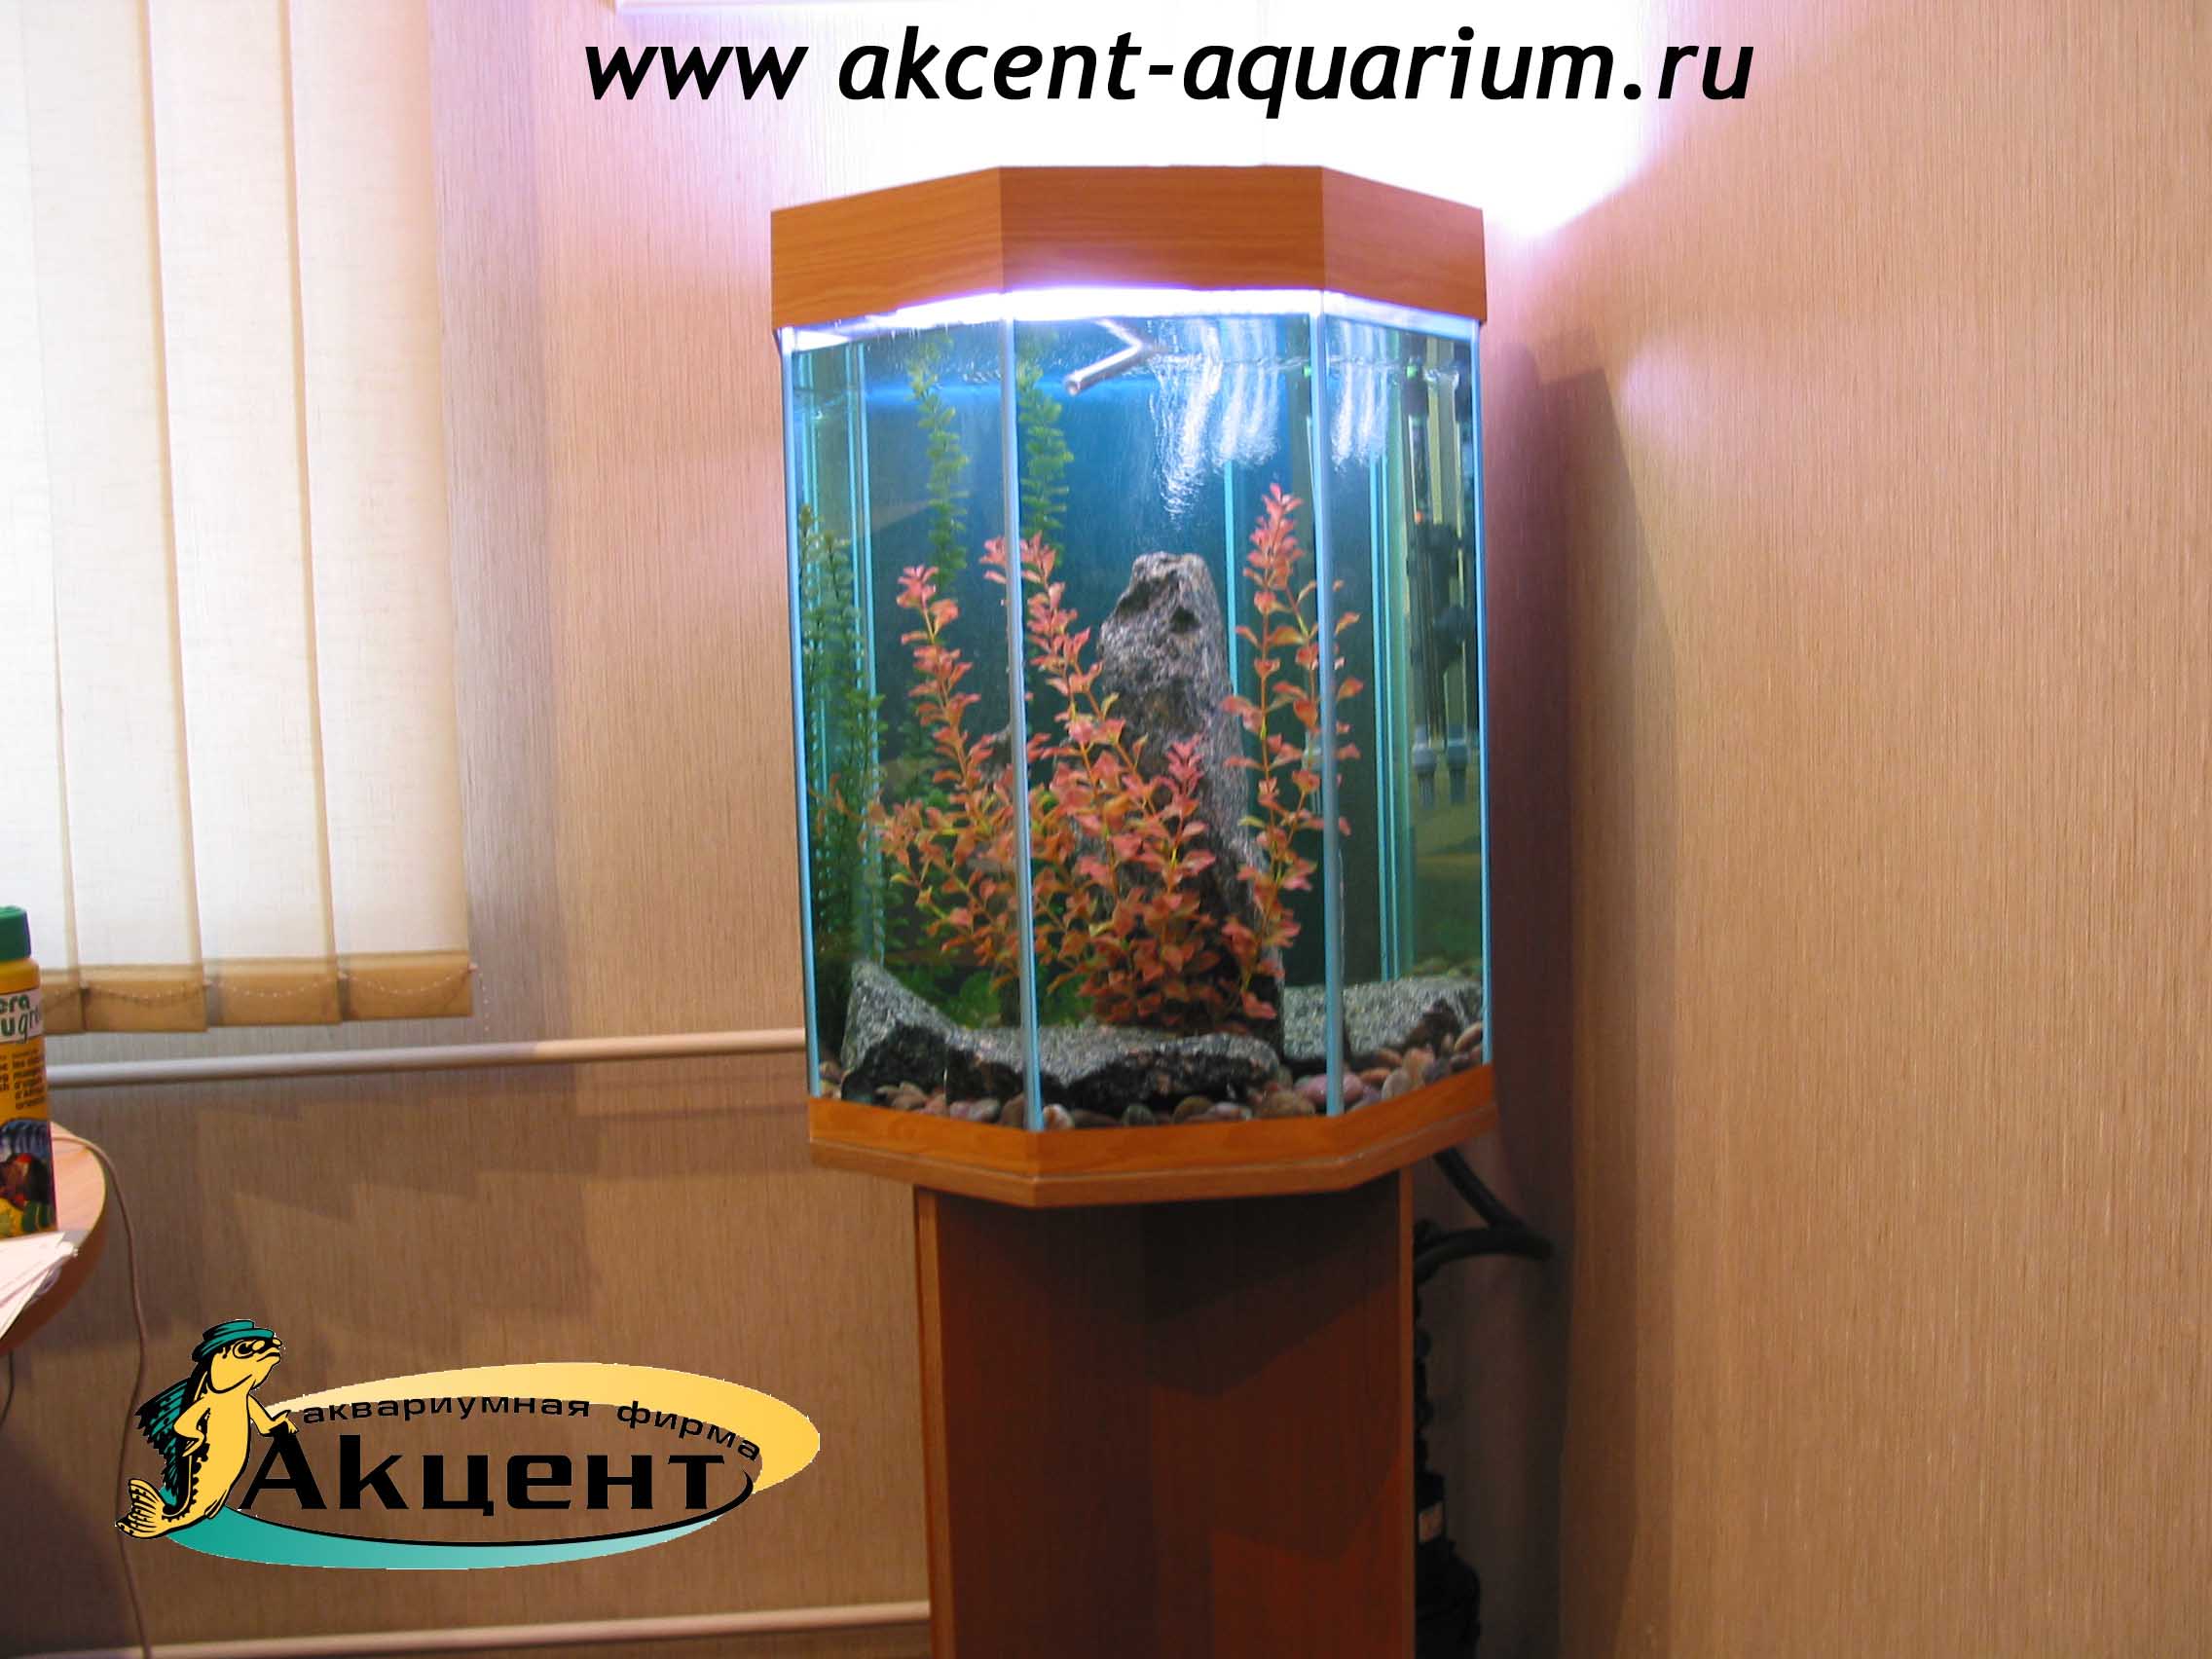 Акцент-аквариум,аквариум многогранный 60 литров